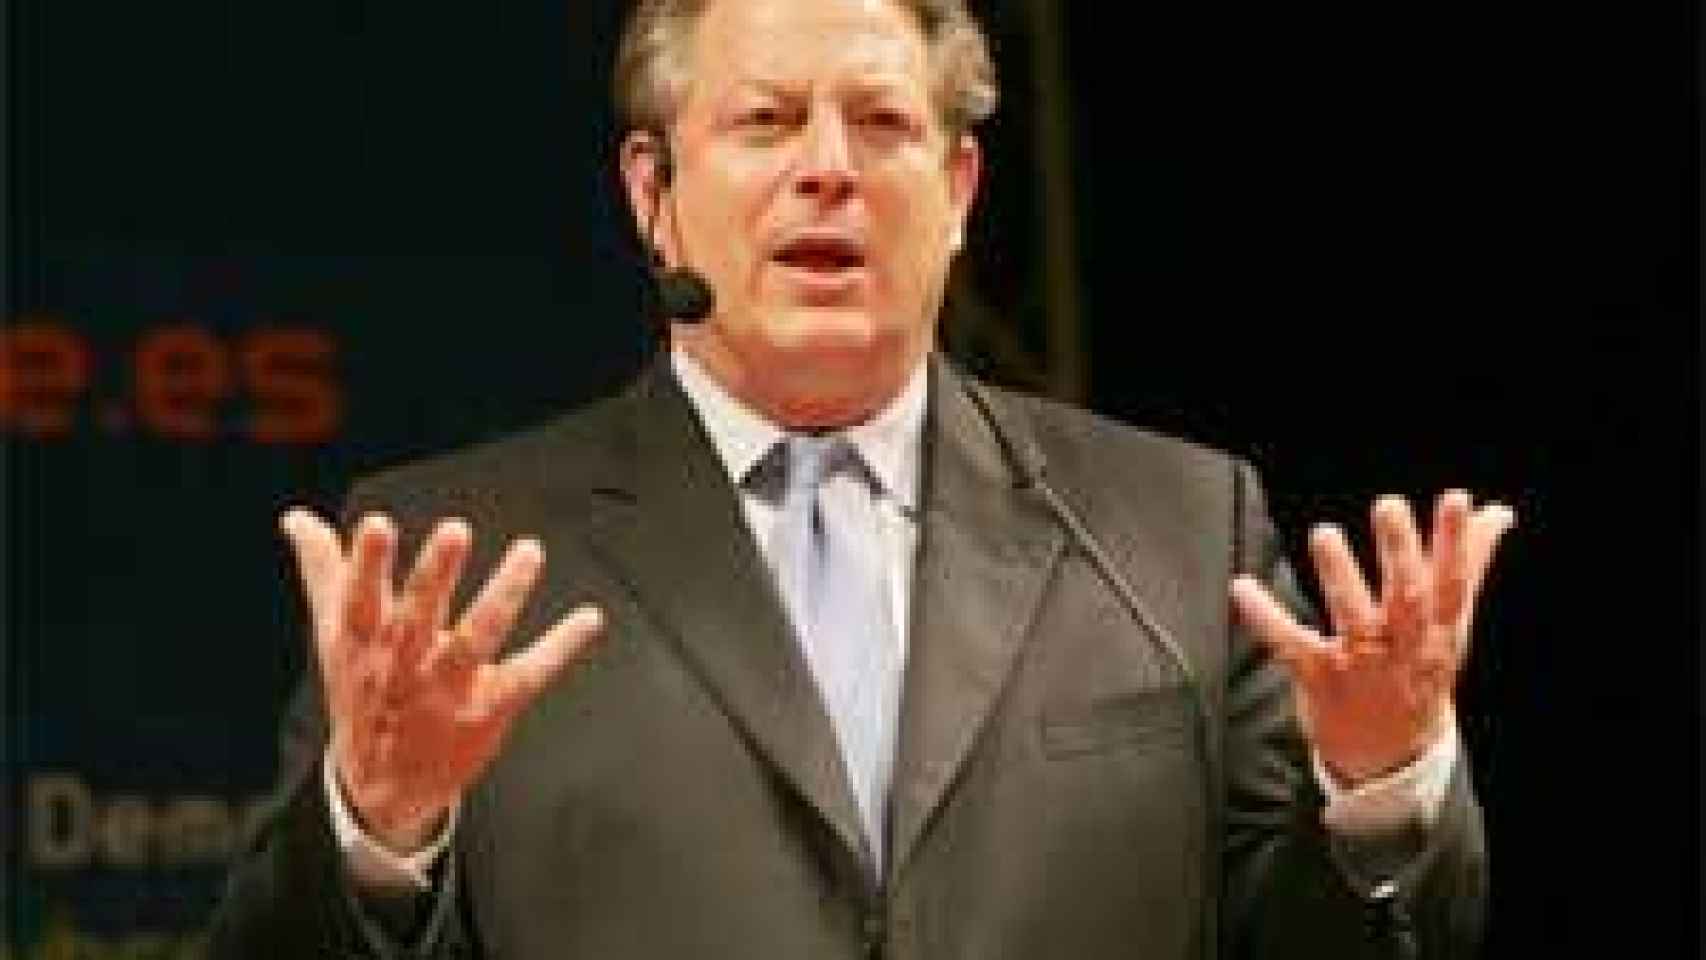 Image: Vuelve la factoría Al Gore